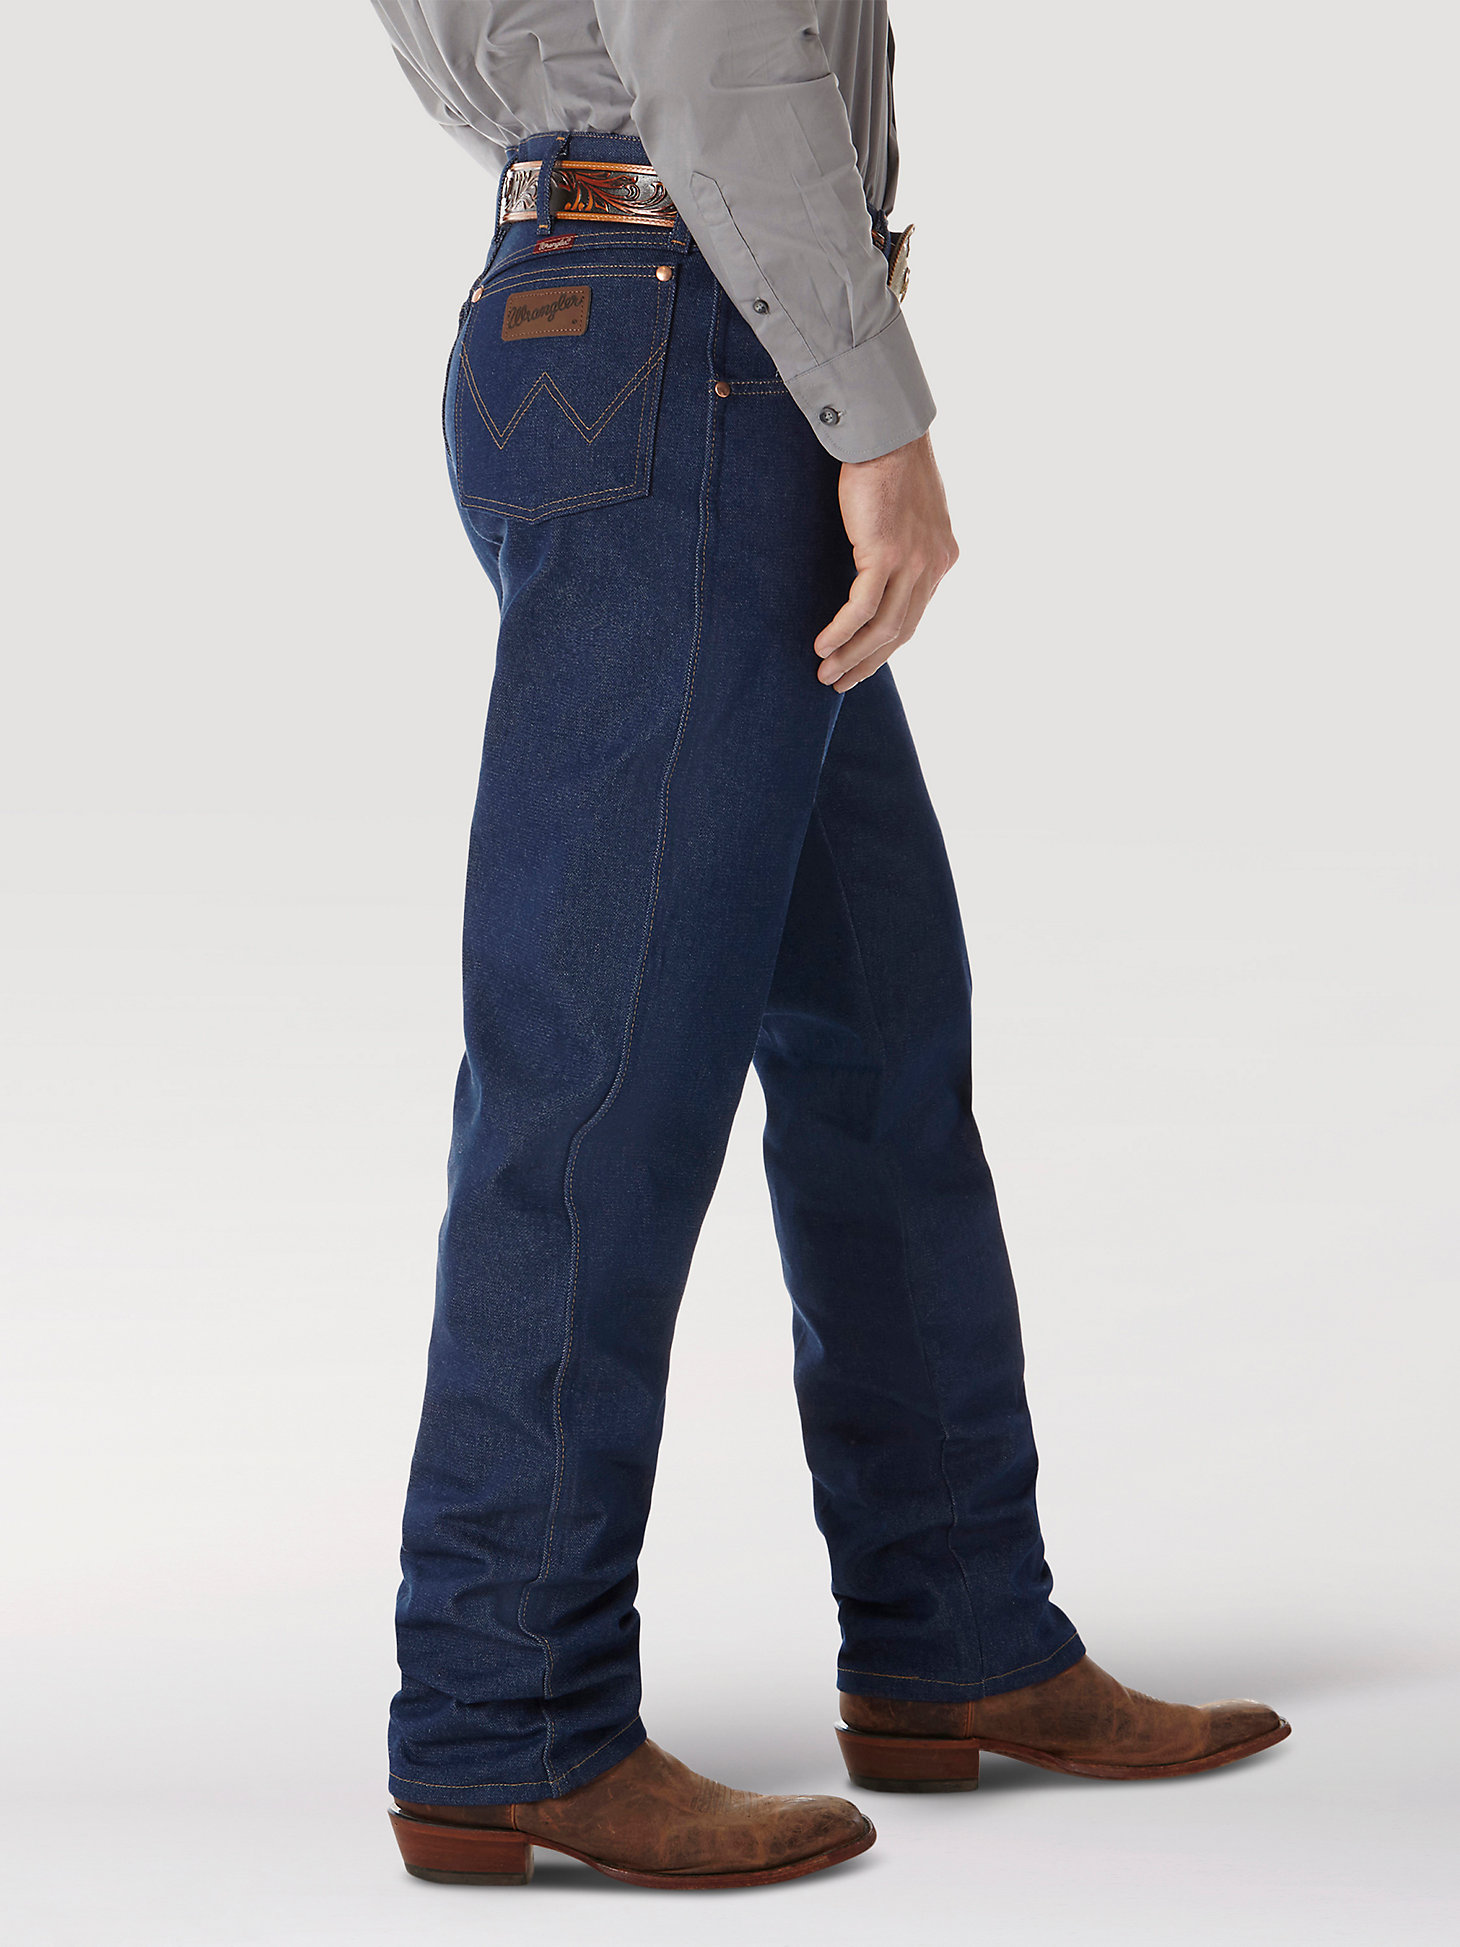 Rigid Wrangler® Cowboy Cut® Relaxed Fit Jean in Rigid Indigo alternative view 1